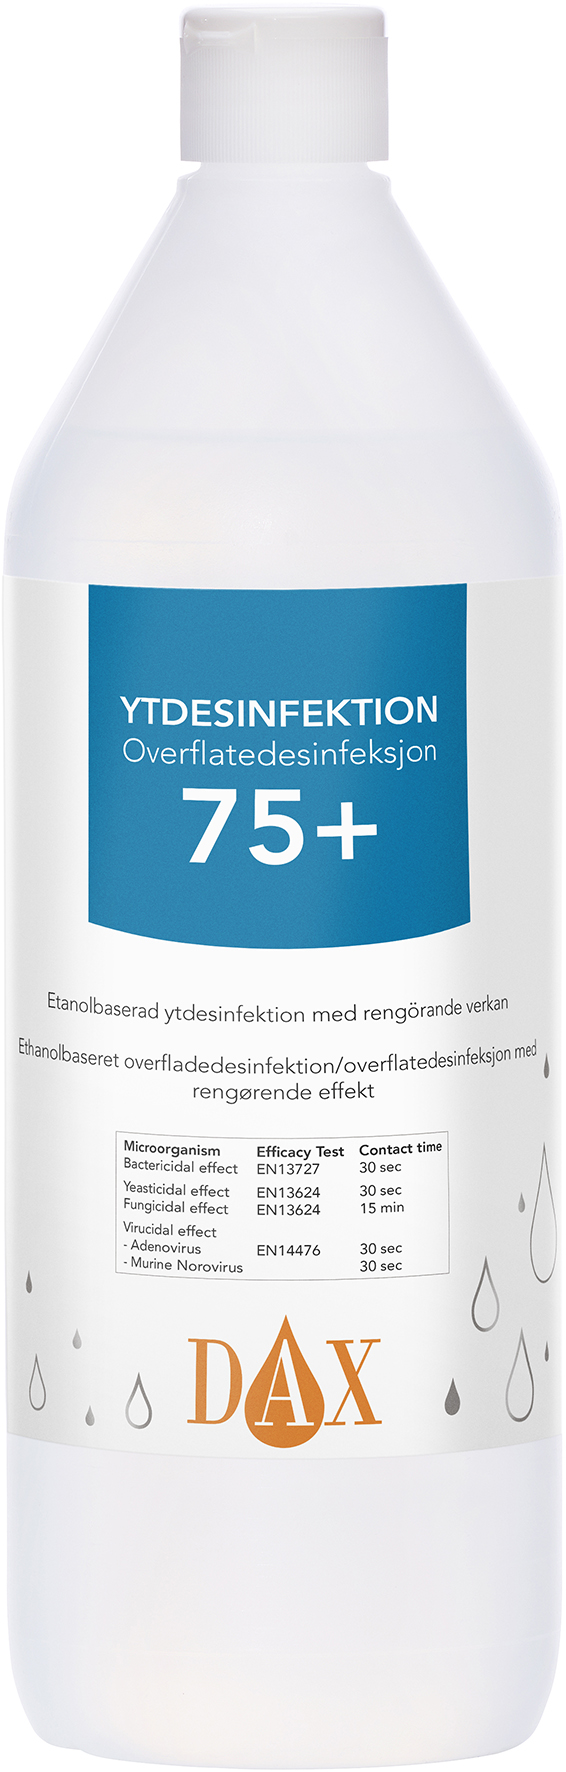 [8556830] DAX Ytdesinfektion 75+ 1 Liter